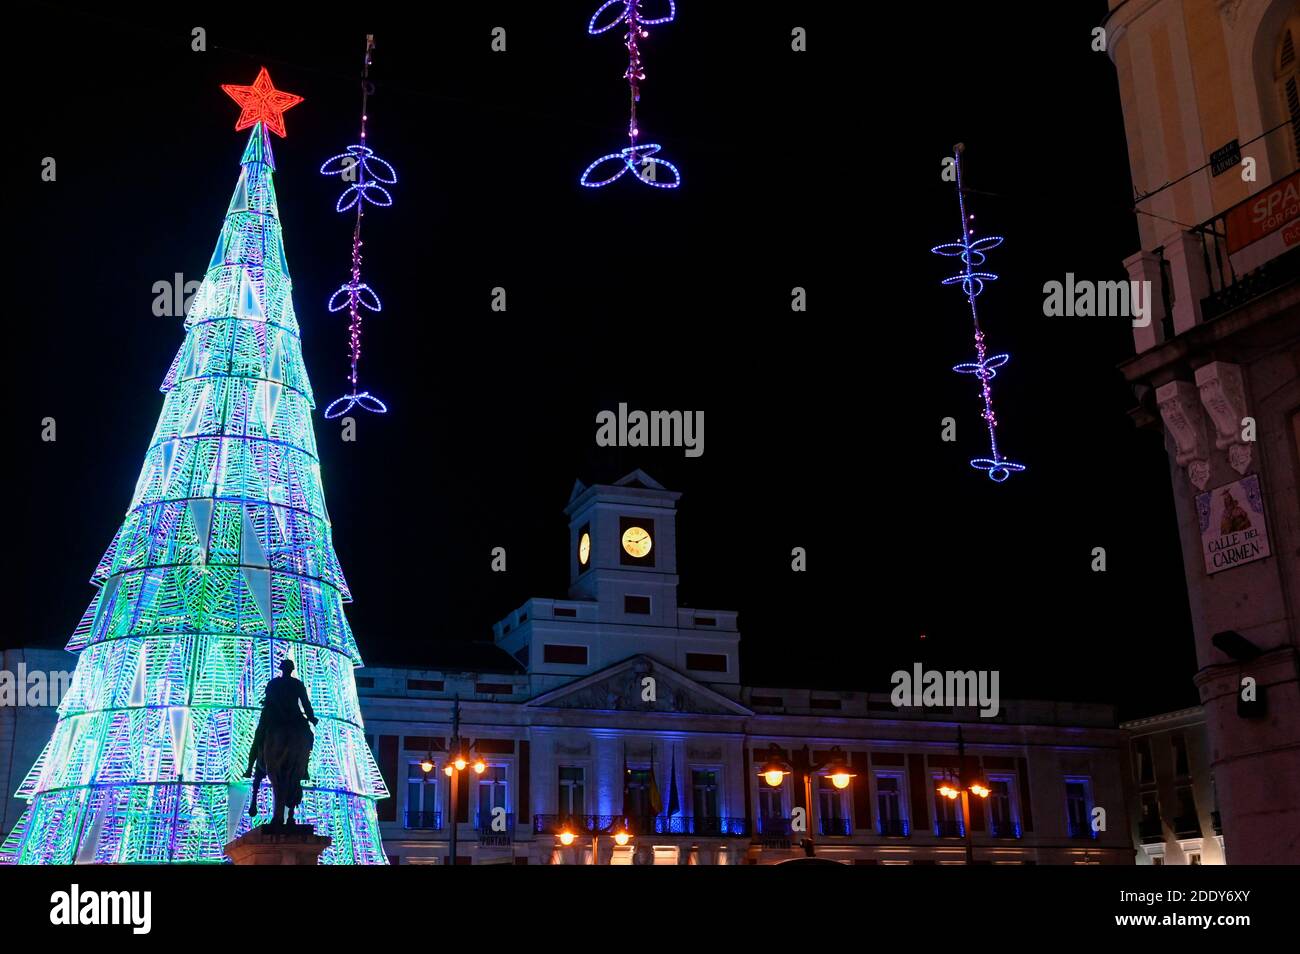 Madrid, Spanien. November 2020. Weihaftertsbaum-Installation auf der Puerta del Sol - die traditionelle Weihafterts-Beleuchtung im Stadtzentrum wird eingeschaltet. Madrid 11/26/2020 Quelle: dpa/Alamy Live News Stockfoto